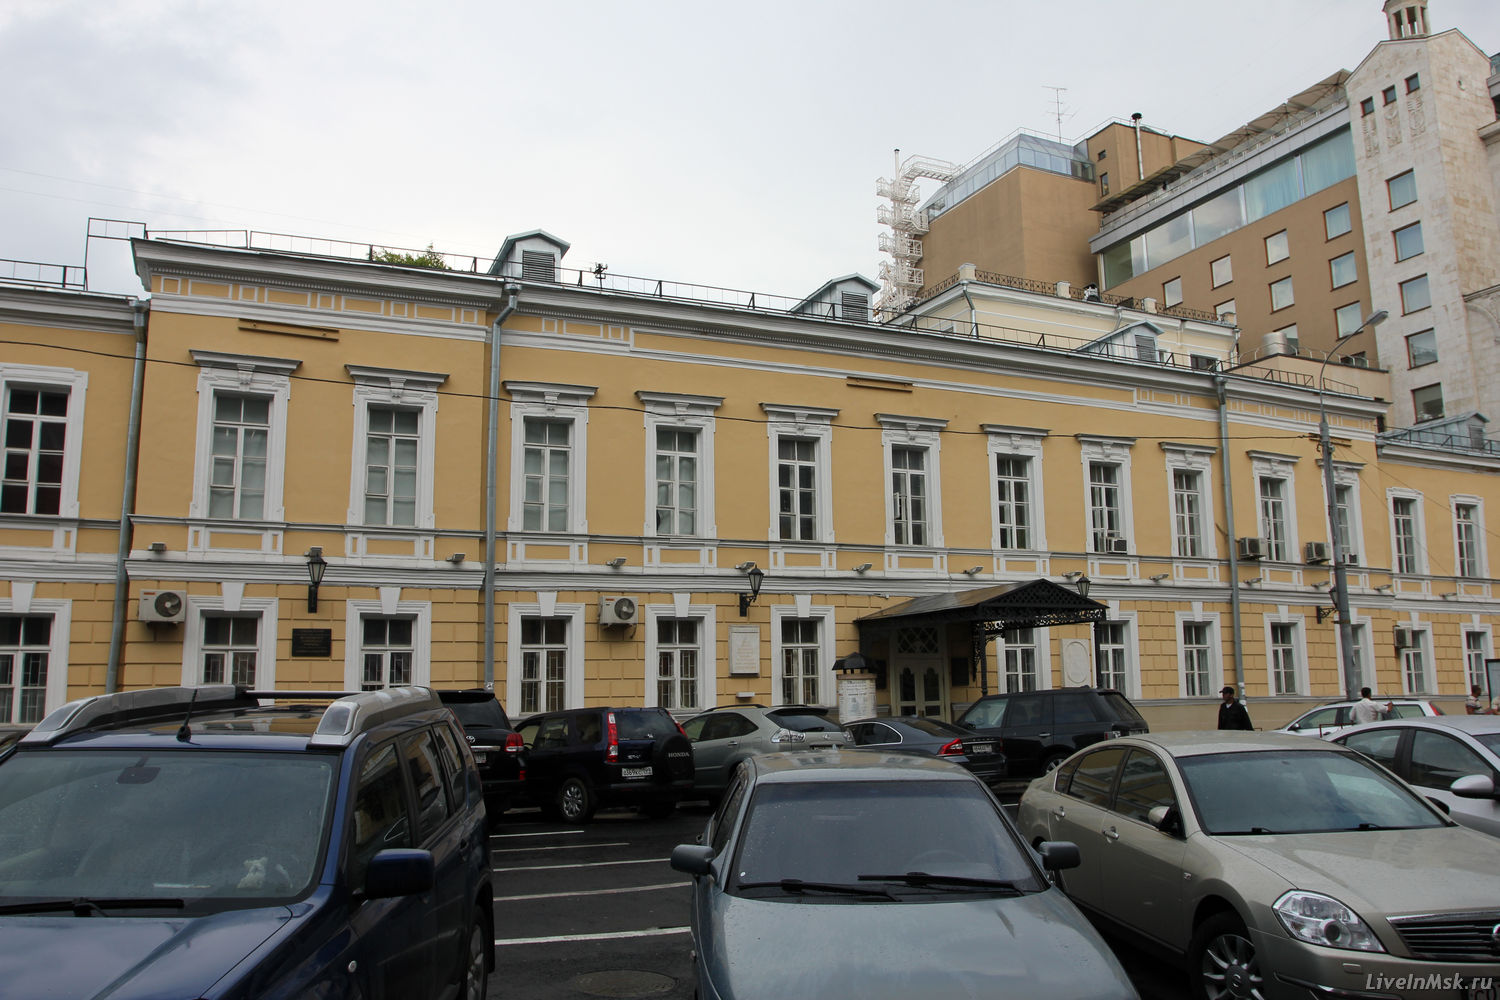 Училище имени М.С. Щепкина, фото 2014 года